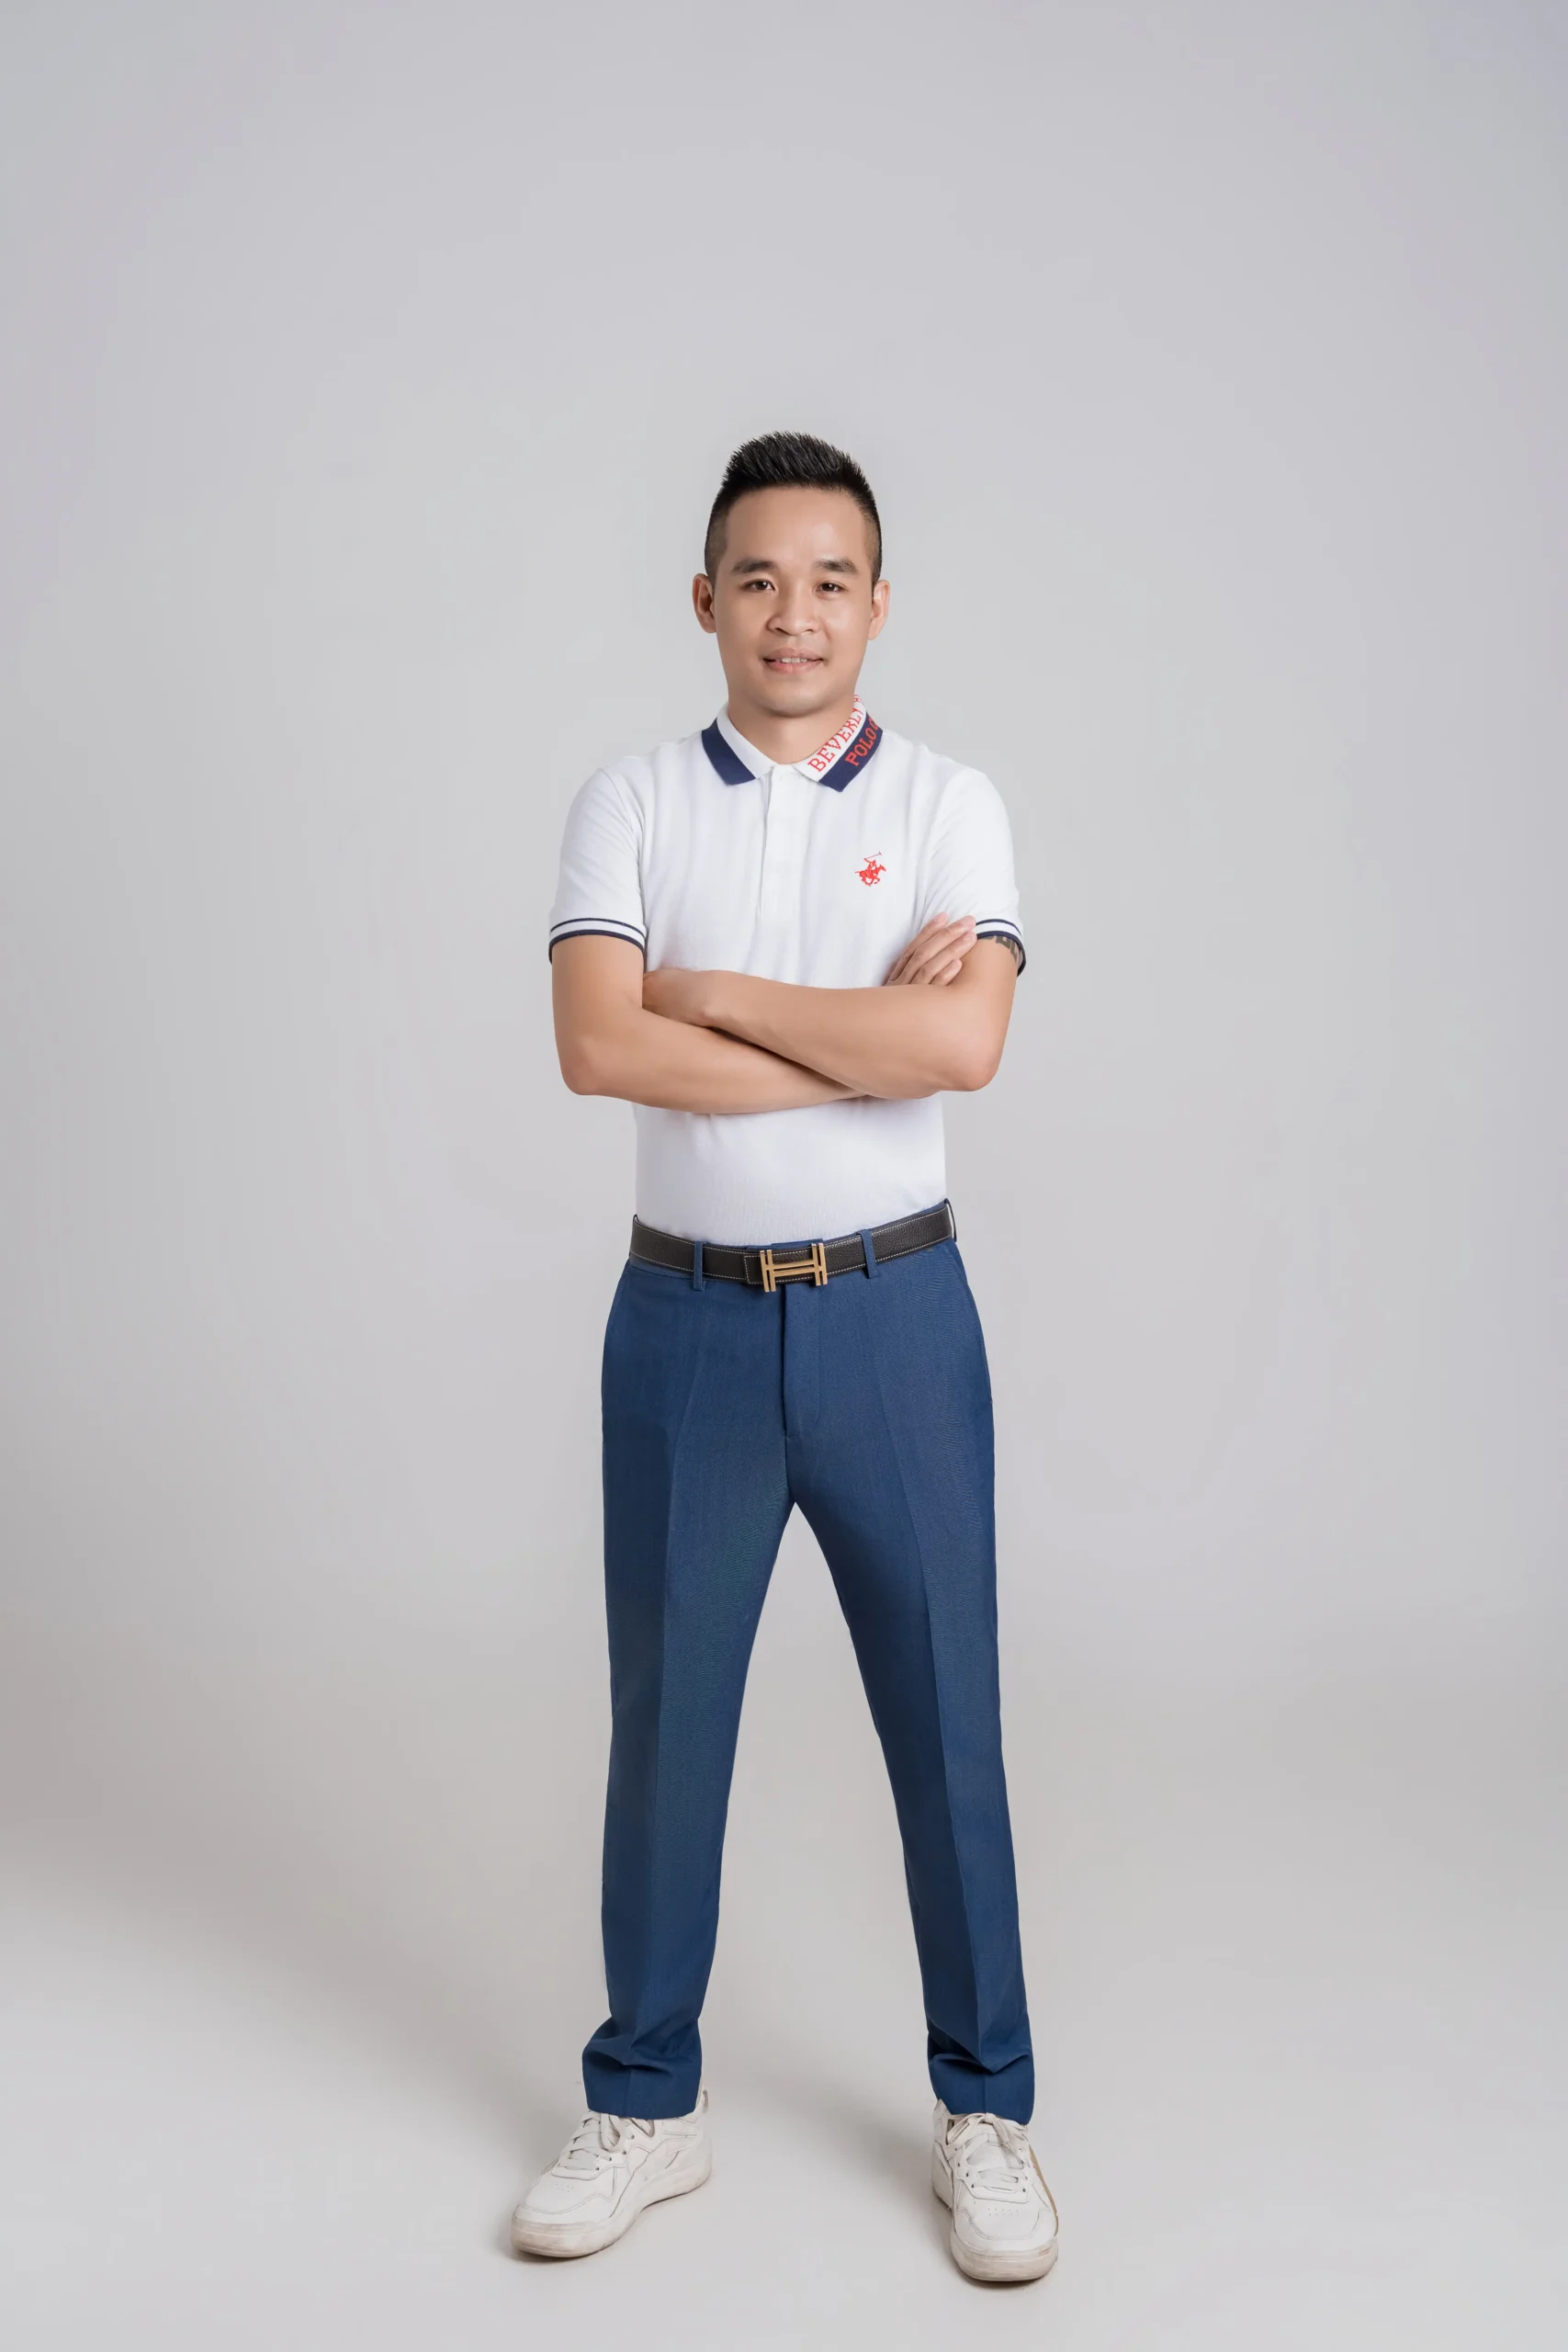 CEO Nguyễn Đức Hà